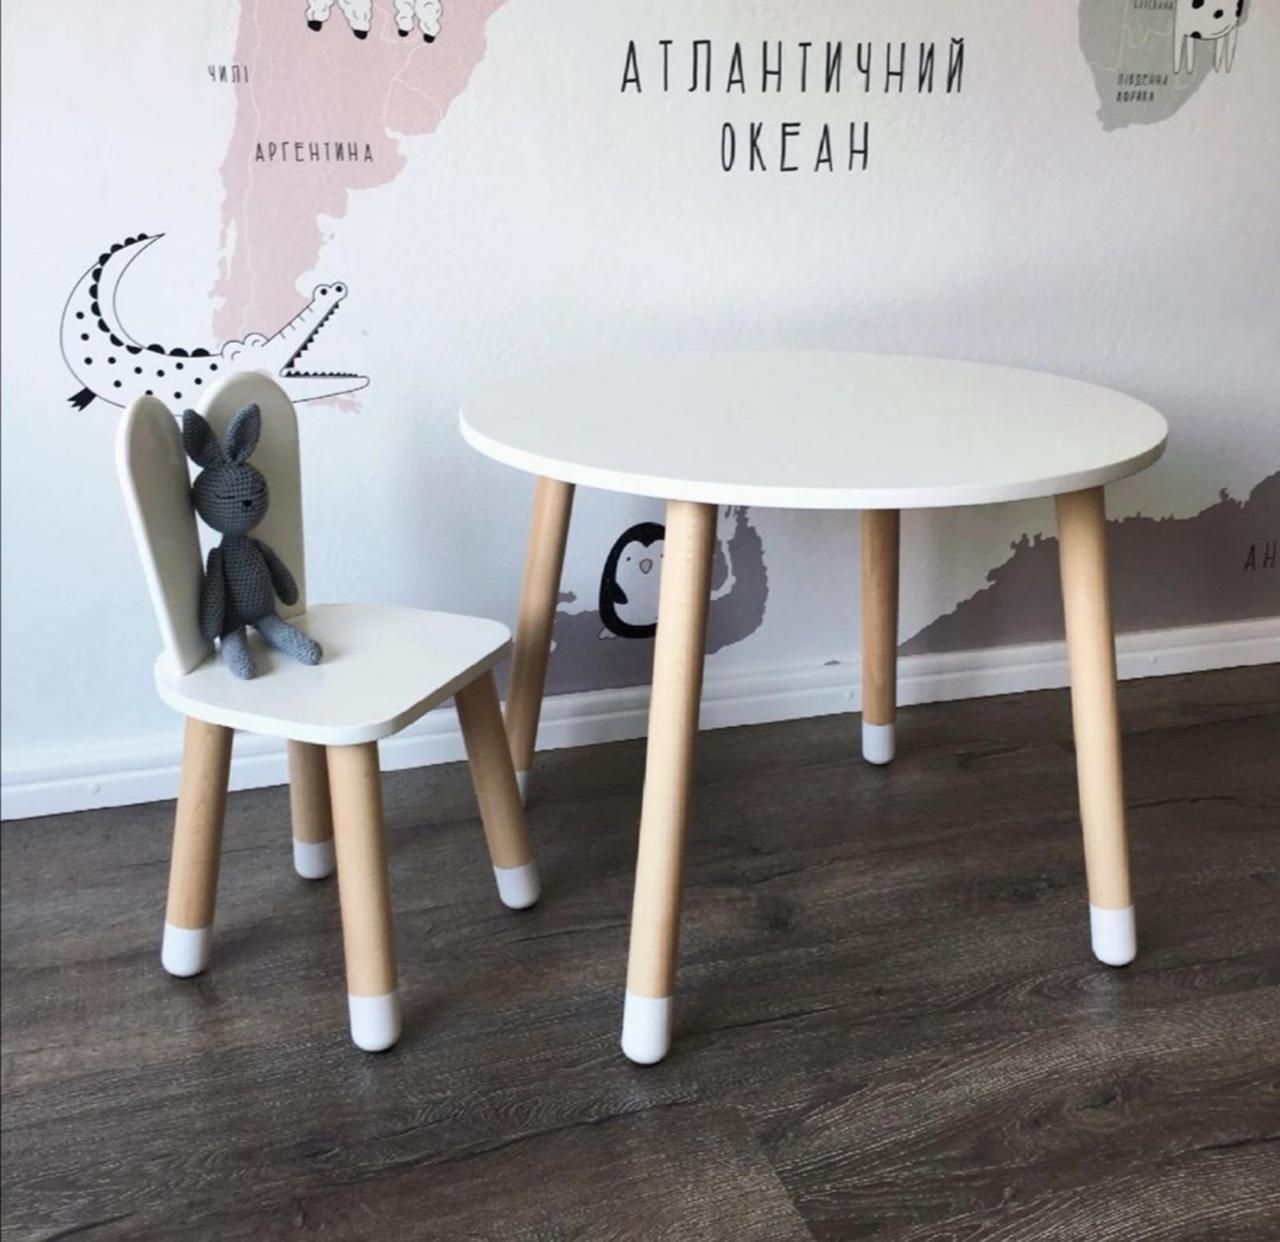 Дитячий стіл і 1 стілець (дерев'яний стільчик зайчик і круглий столик)